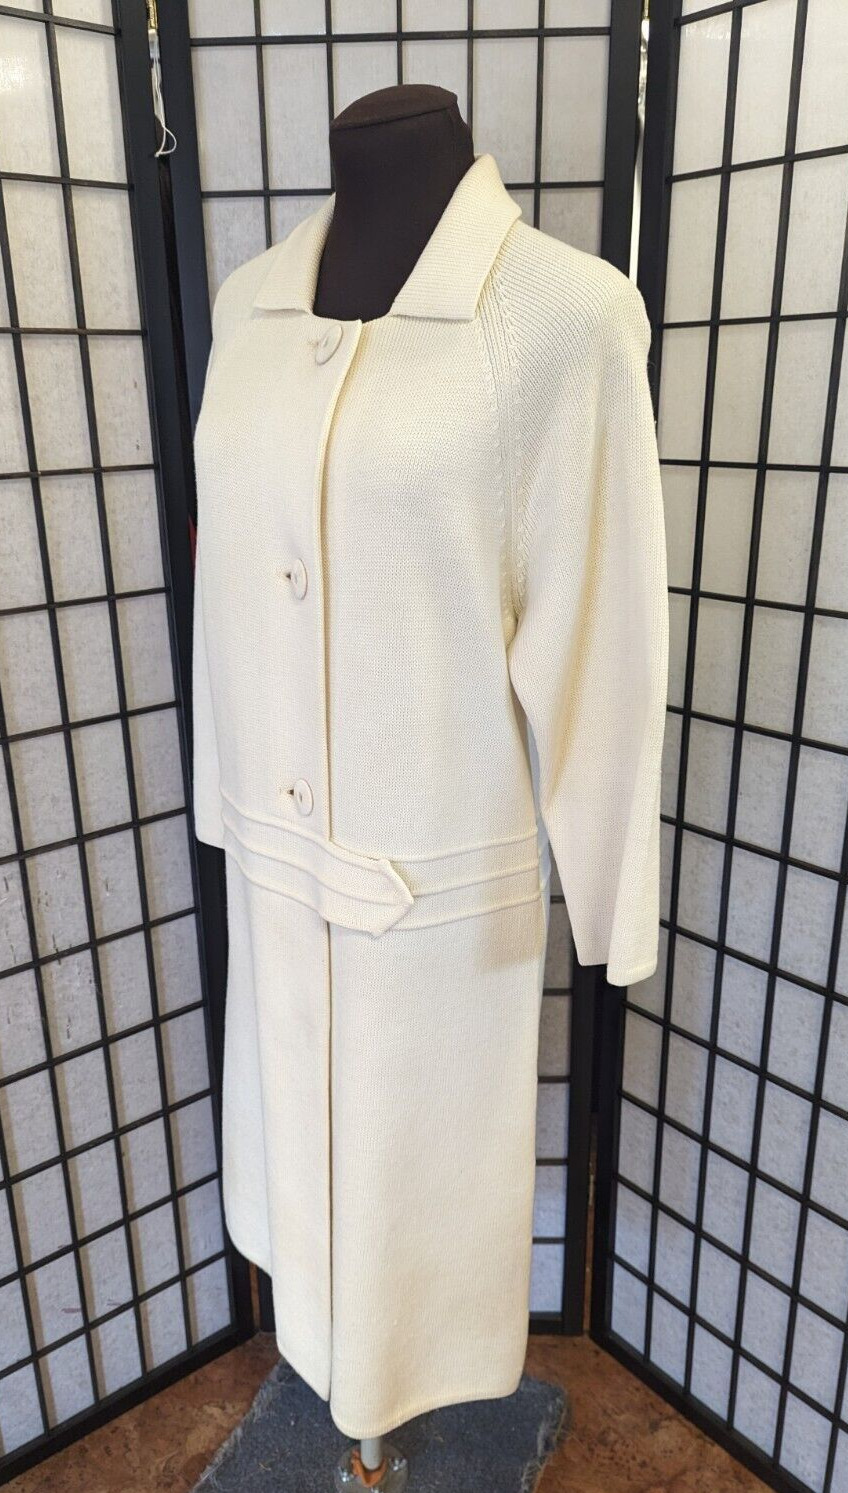 1960s Wool Art Mod Leetex Coat Dress Hong Kong Vintage Cream Sweater Knit Med